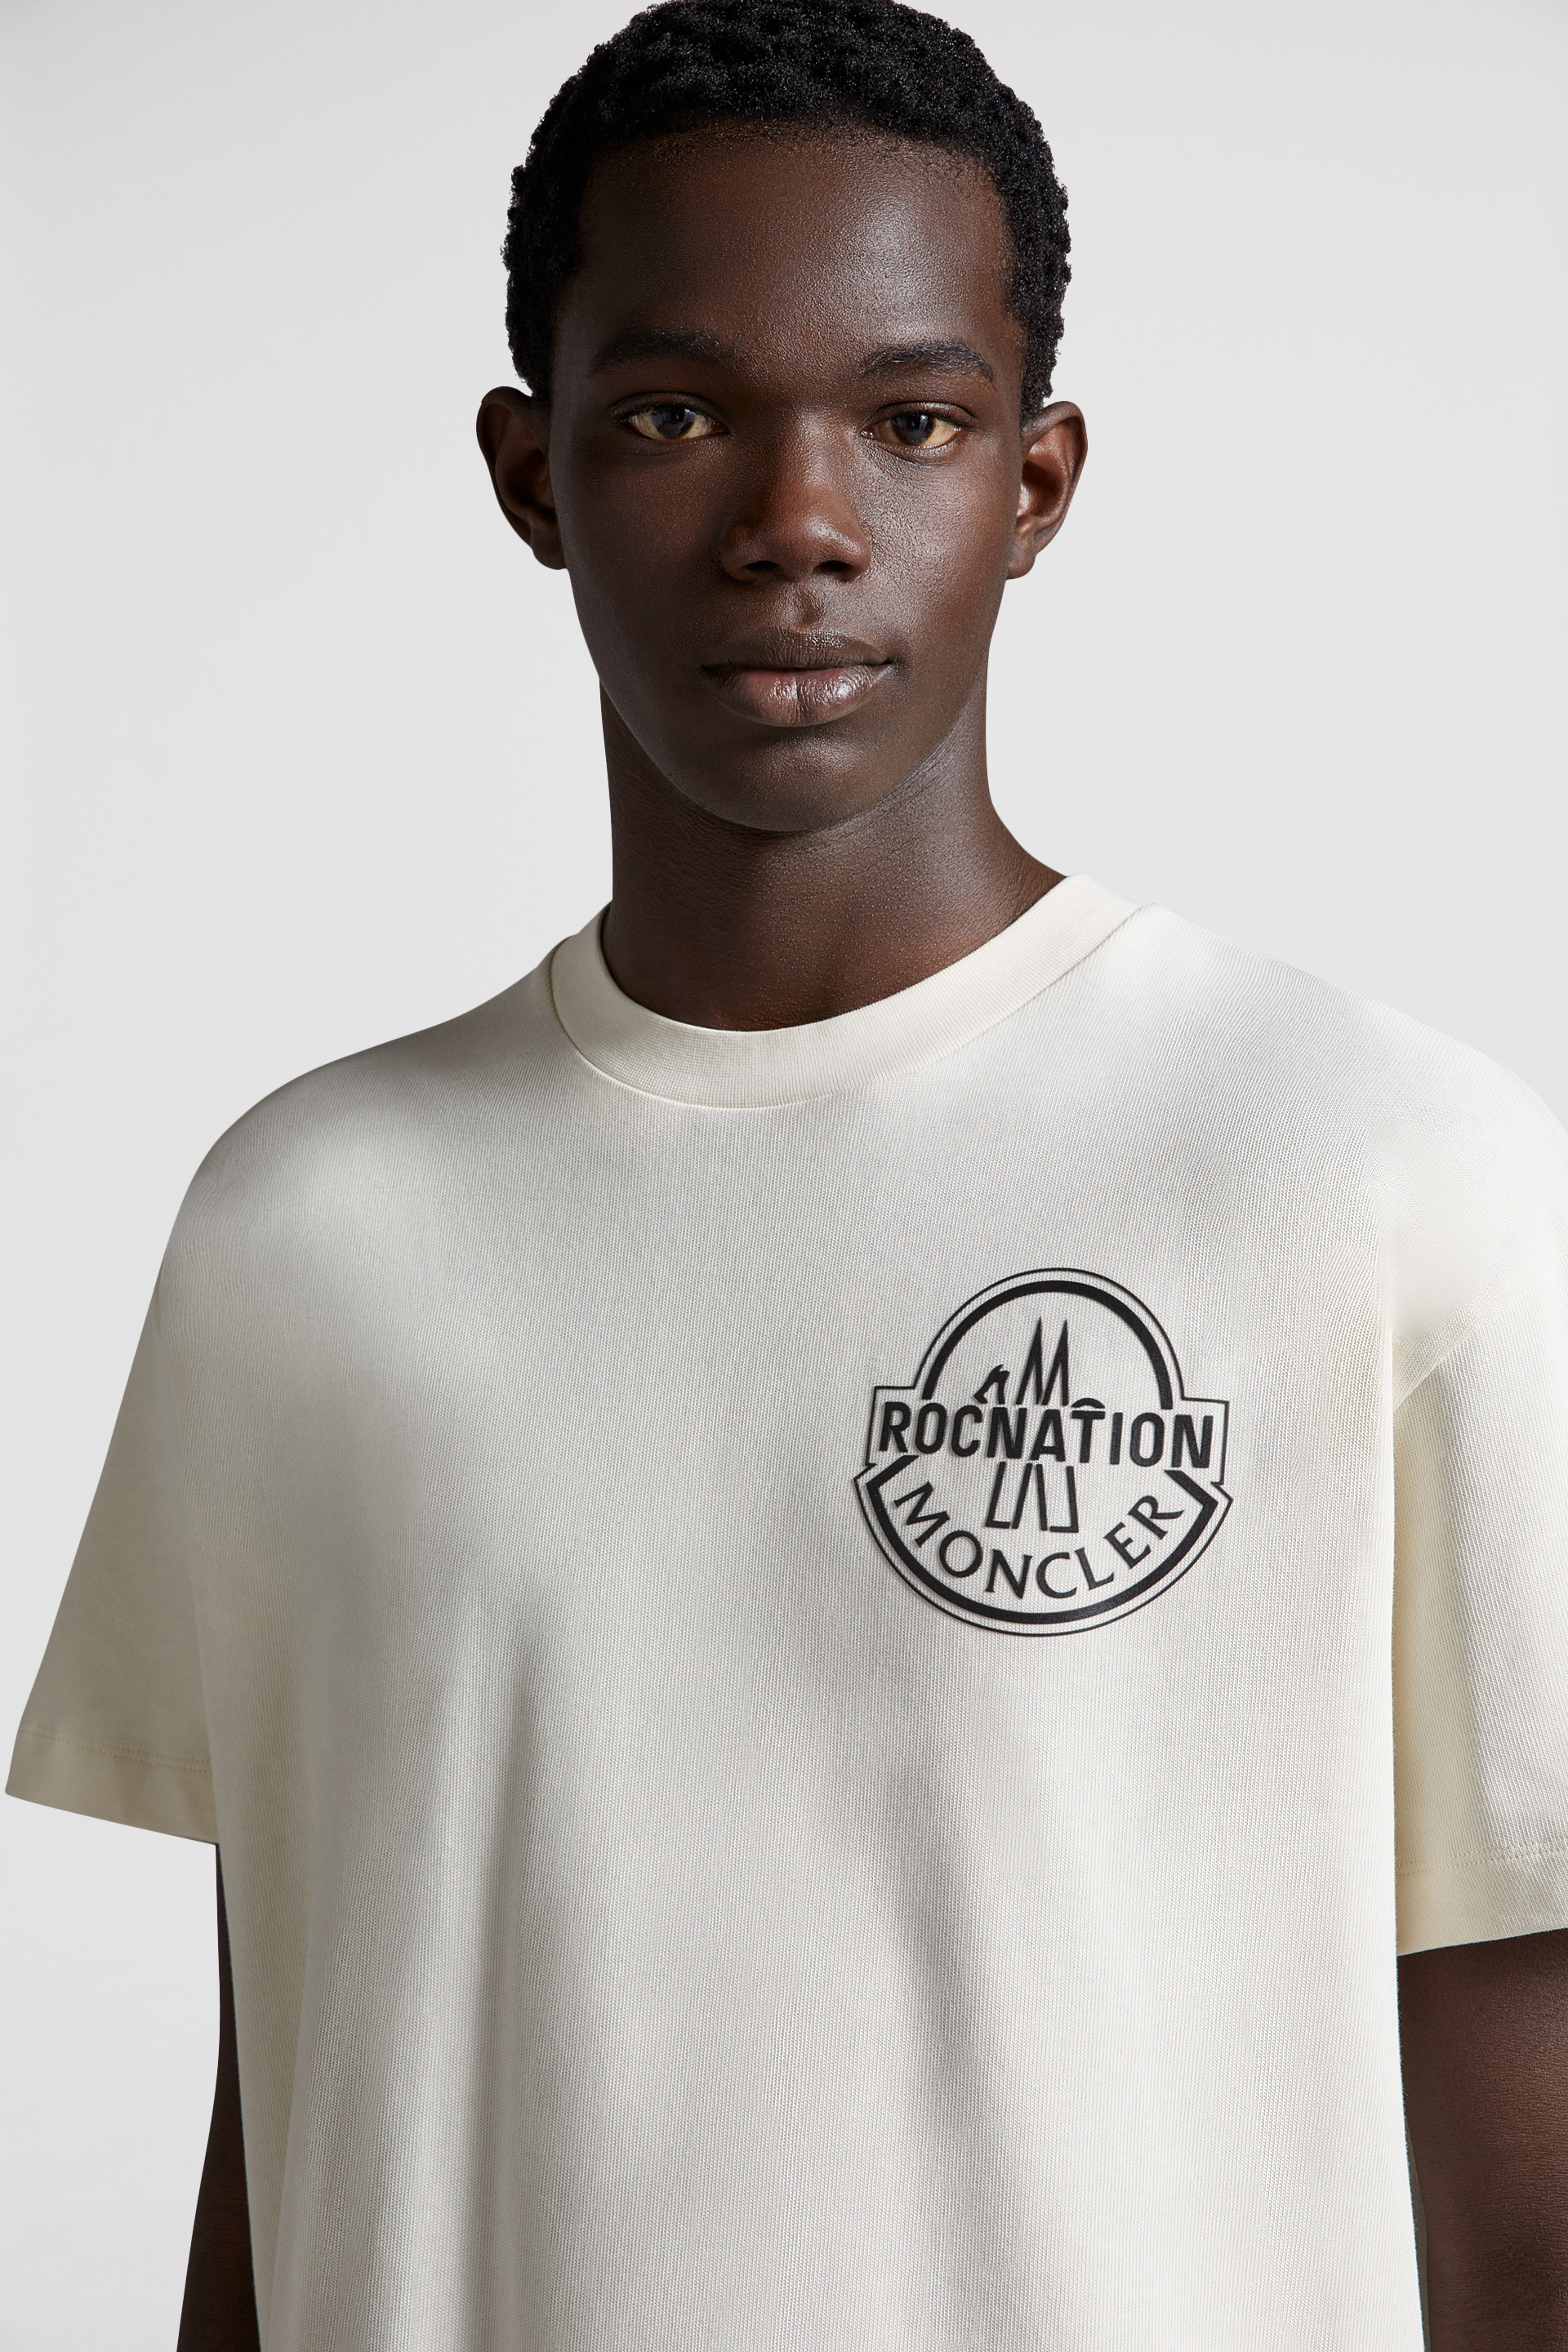 オフホワイト Tシャツ : Moncler x Roc Nation designed by Jay-Z 向け 